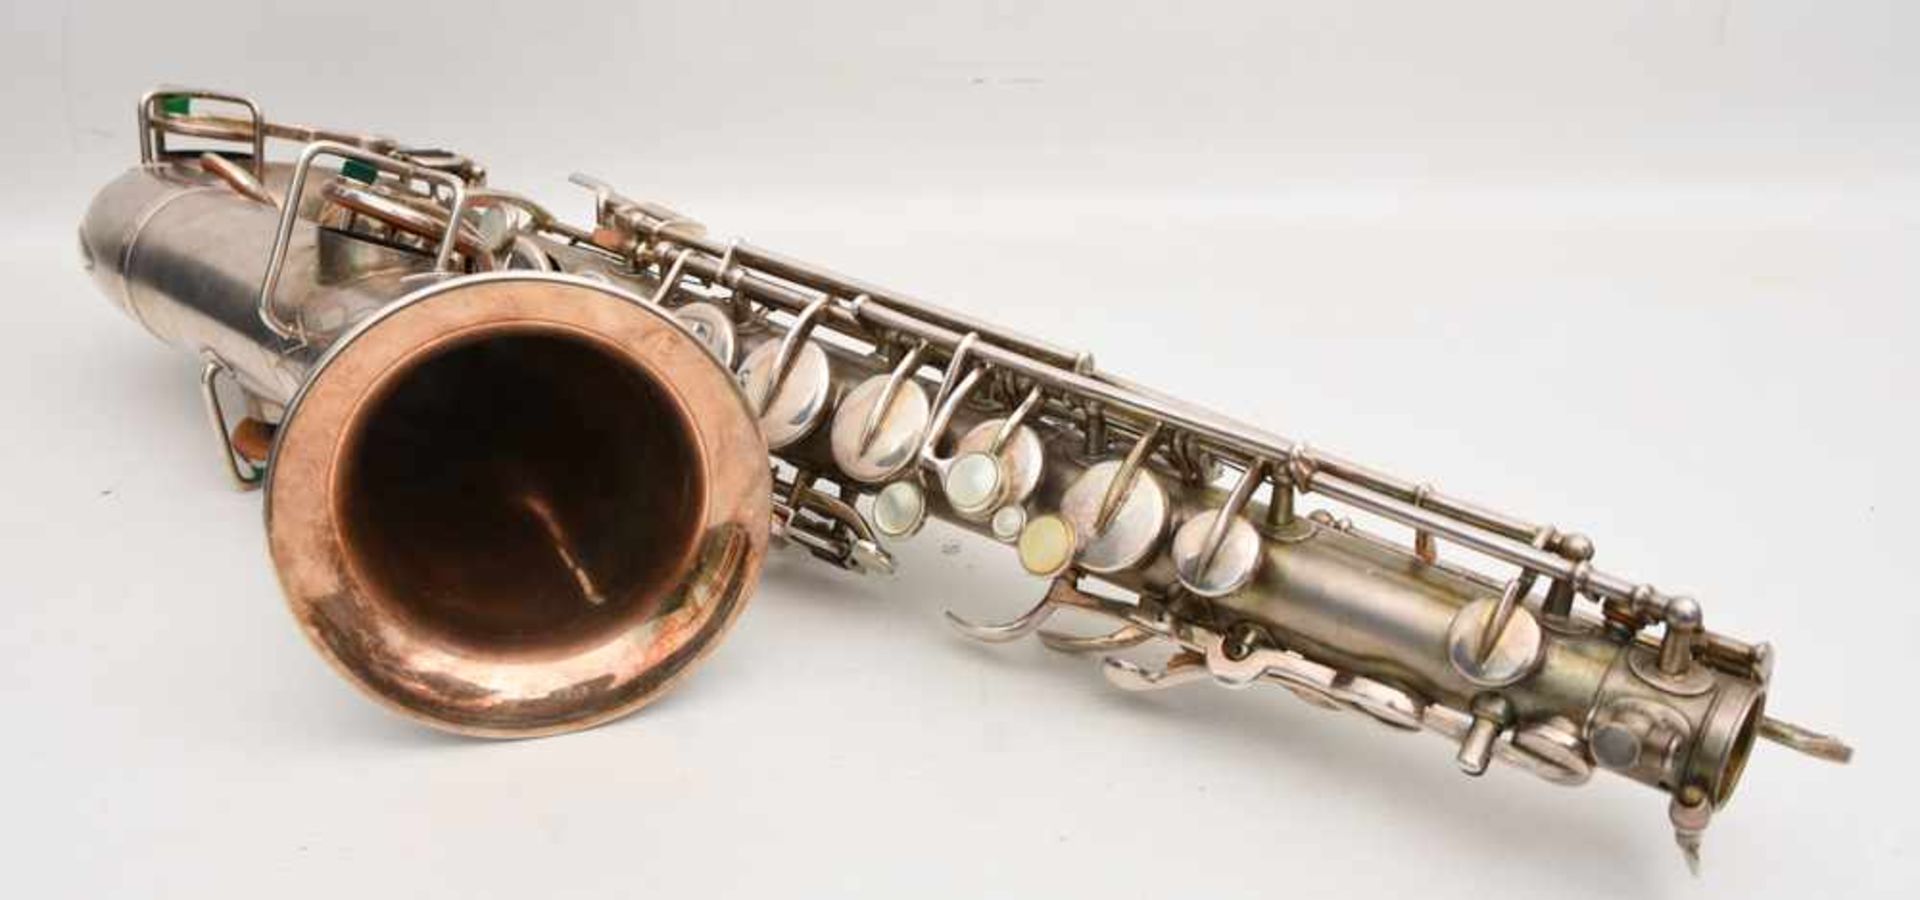 SAXOPHONE MIT KASTEN UND ZUBEHÖR, bez. "the buescher elkhart ind saxophone" nummeriert 163912. d. 12 - Bild 9 aus 9